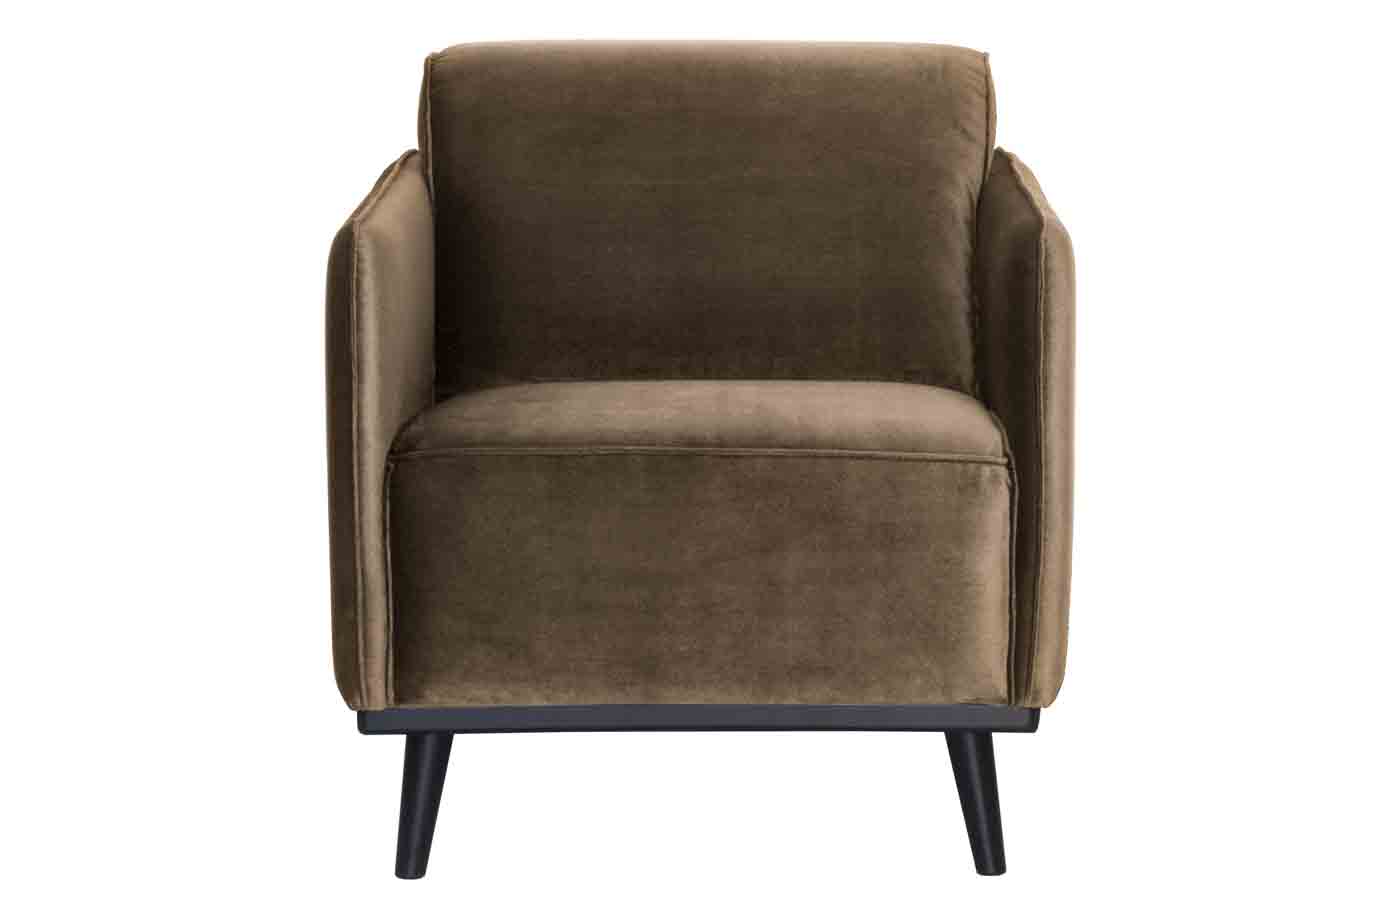 Sessel Statement mit Samt in einem zeitlosen Design. Hochwertige Verarbeitung und angenehmer Sitzkomfort durch die Federkernpolsterung